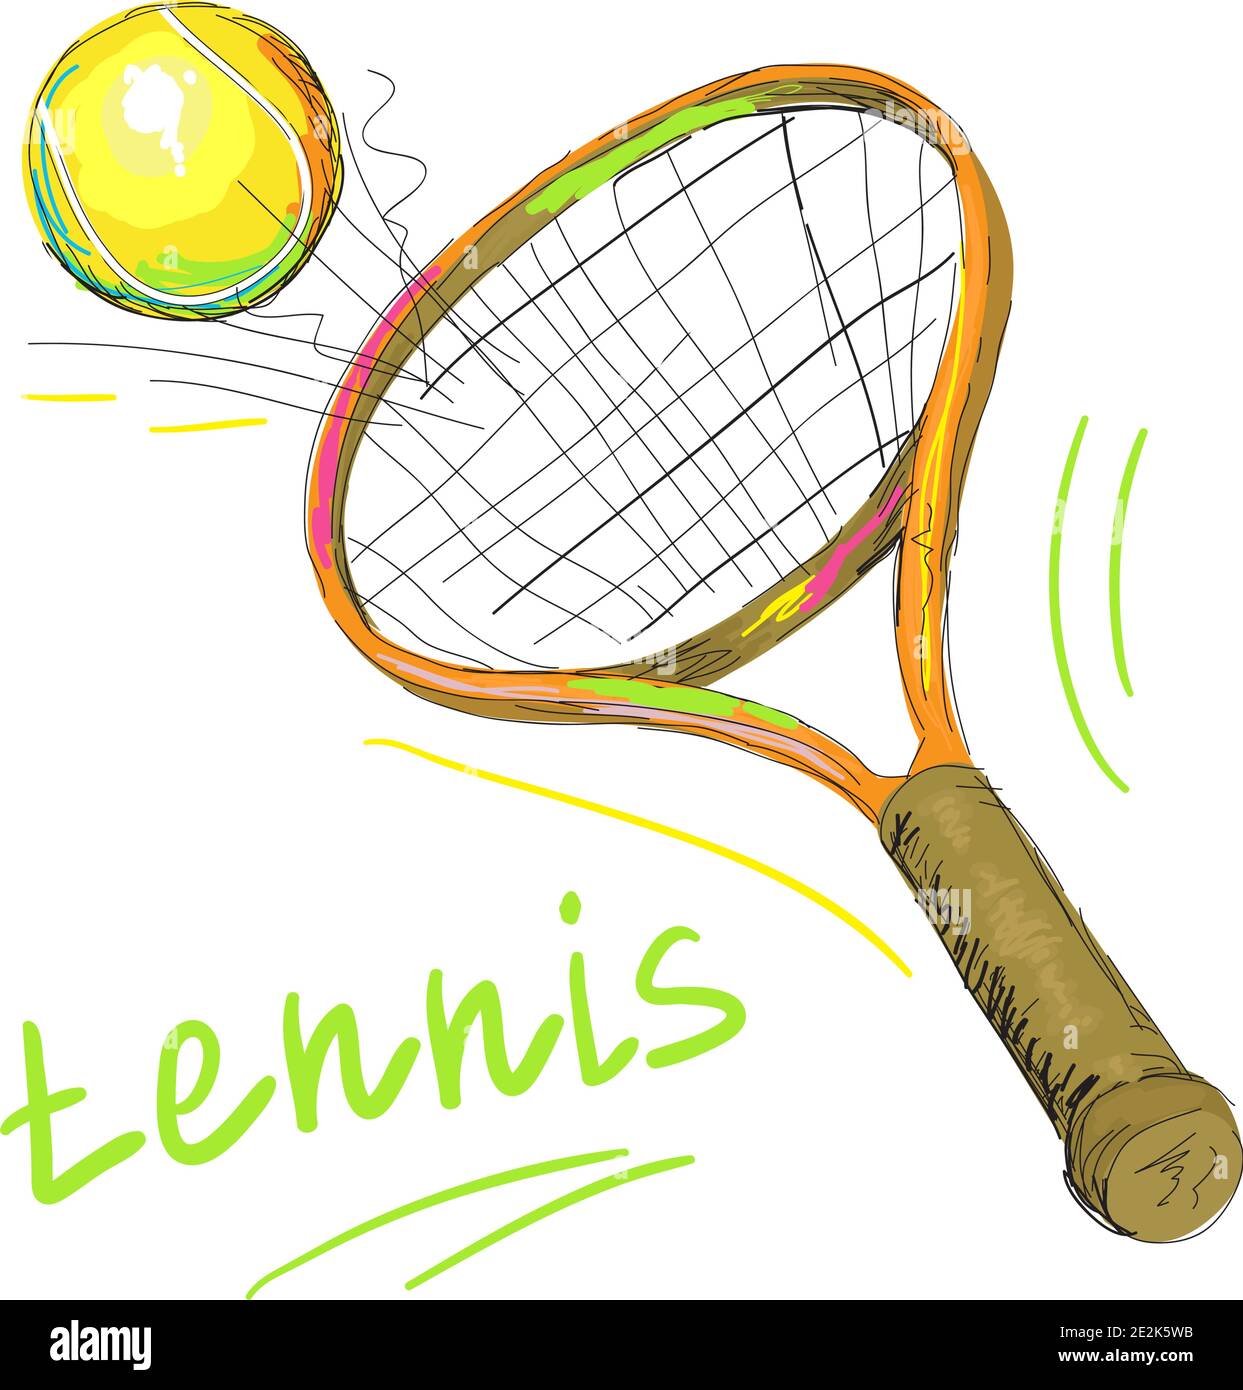 Vektor-Illustration von isolierten Tennisschläger und Ball, Schläger Nahaufnahme auf weißem Hintergrund. Stock Vektor